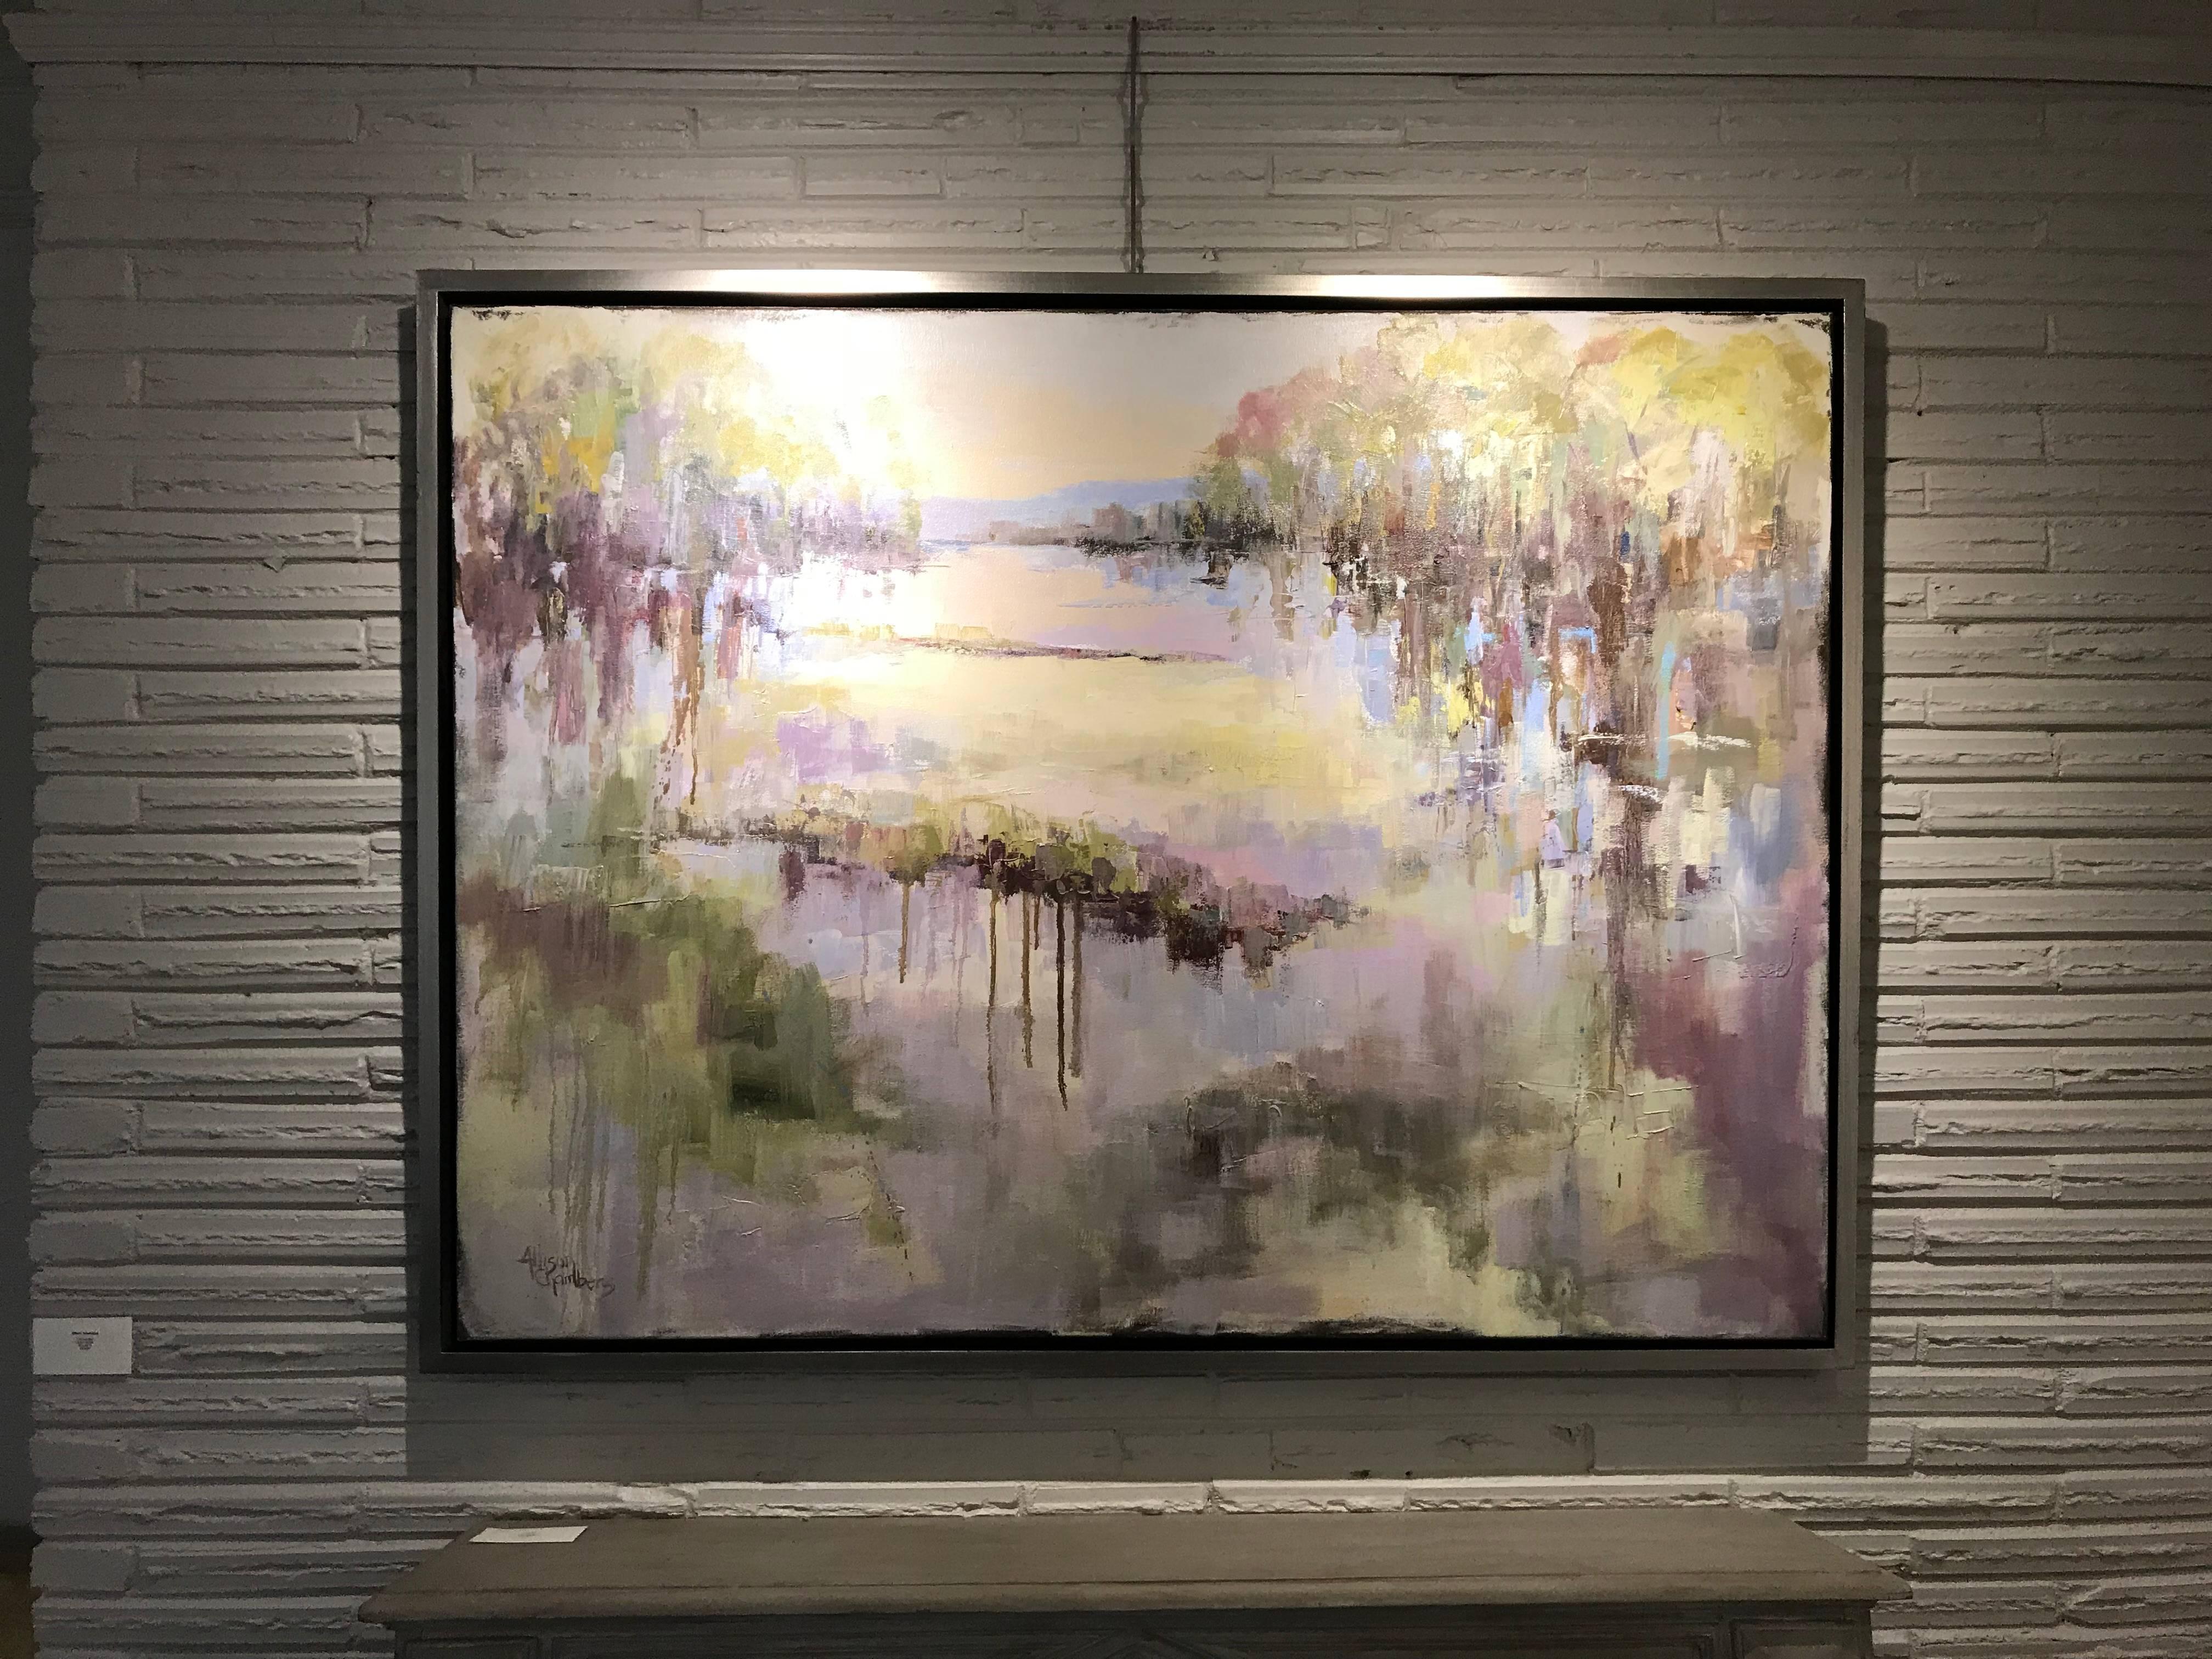 'I Remember', Framed Horizontal Oil on Canvas Impressionist Landscape Painting 1